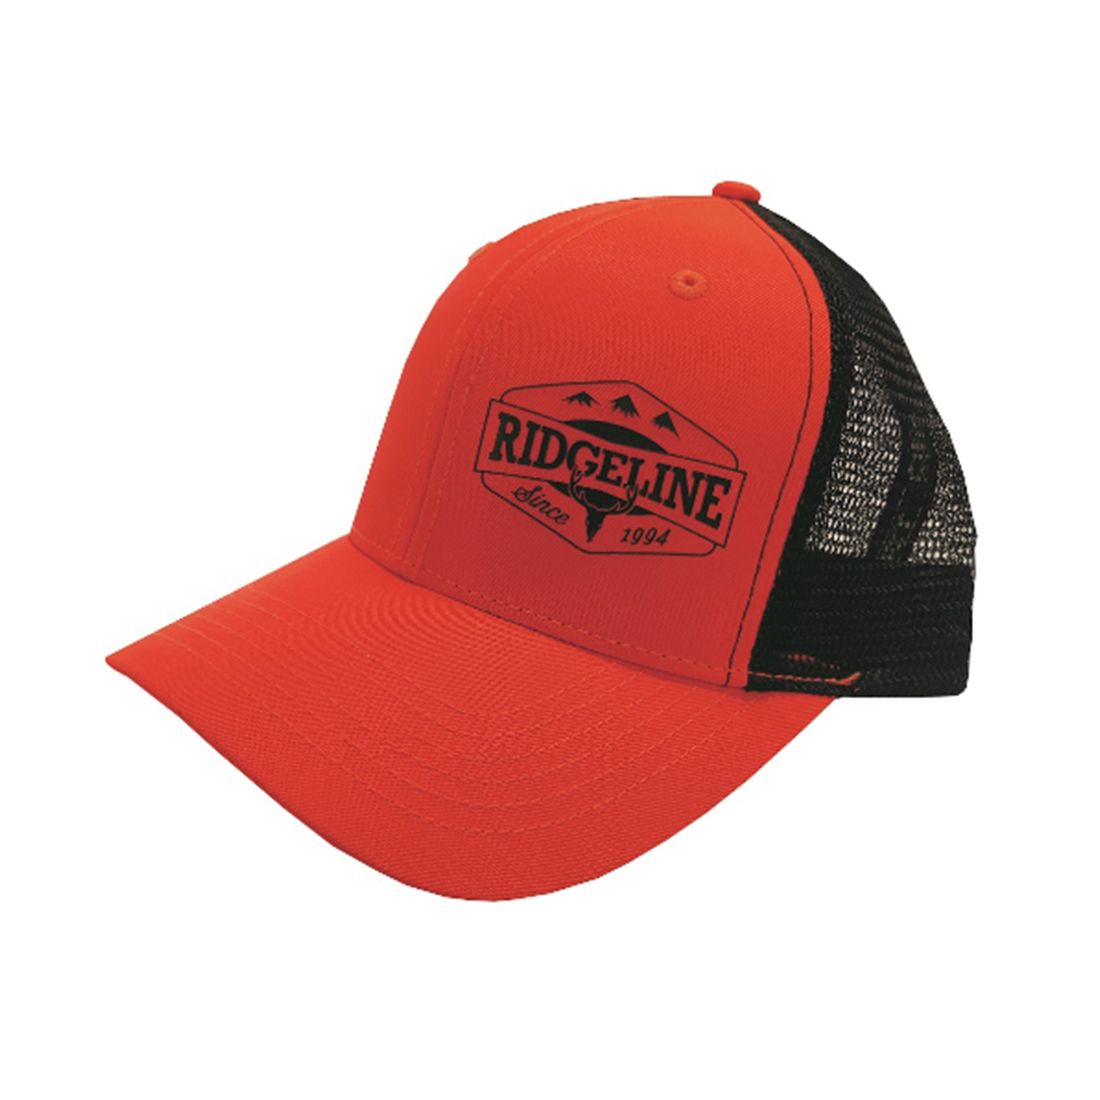 Ridgeline Truckers cap